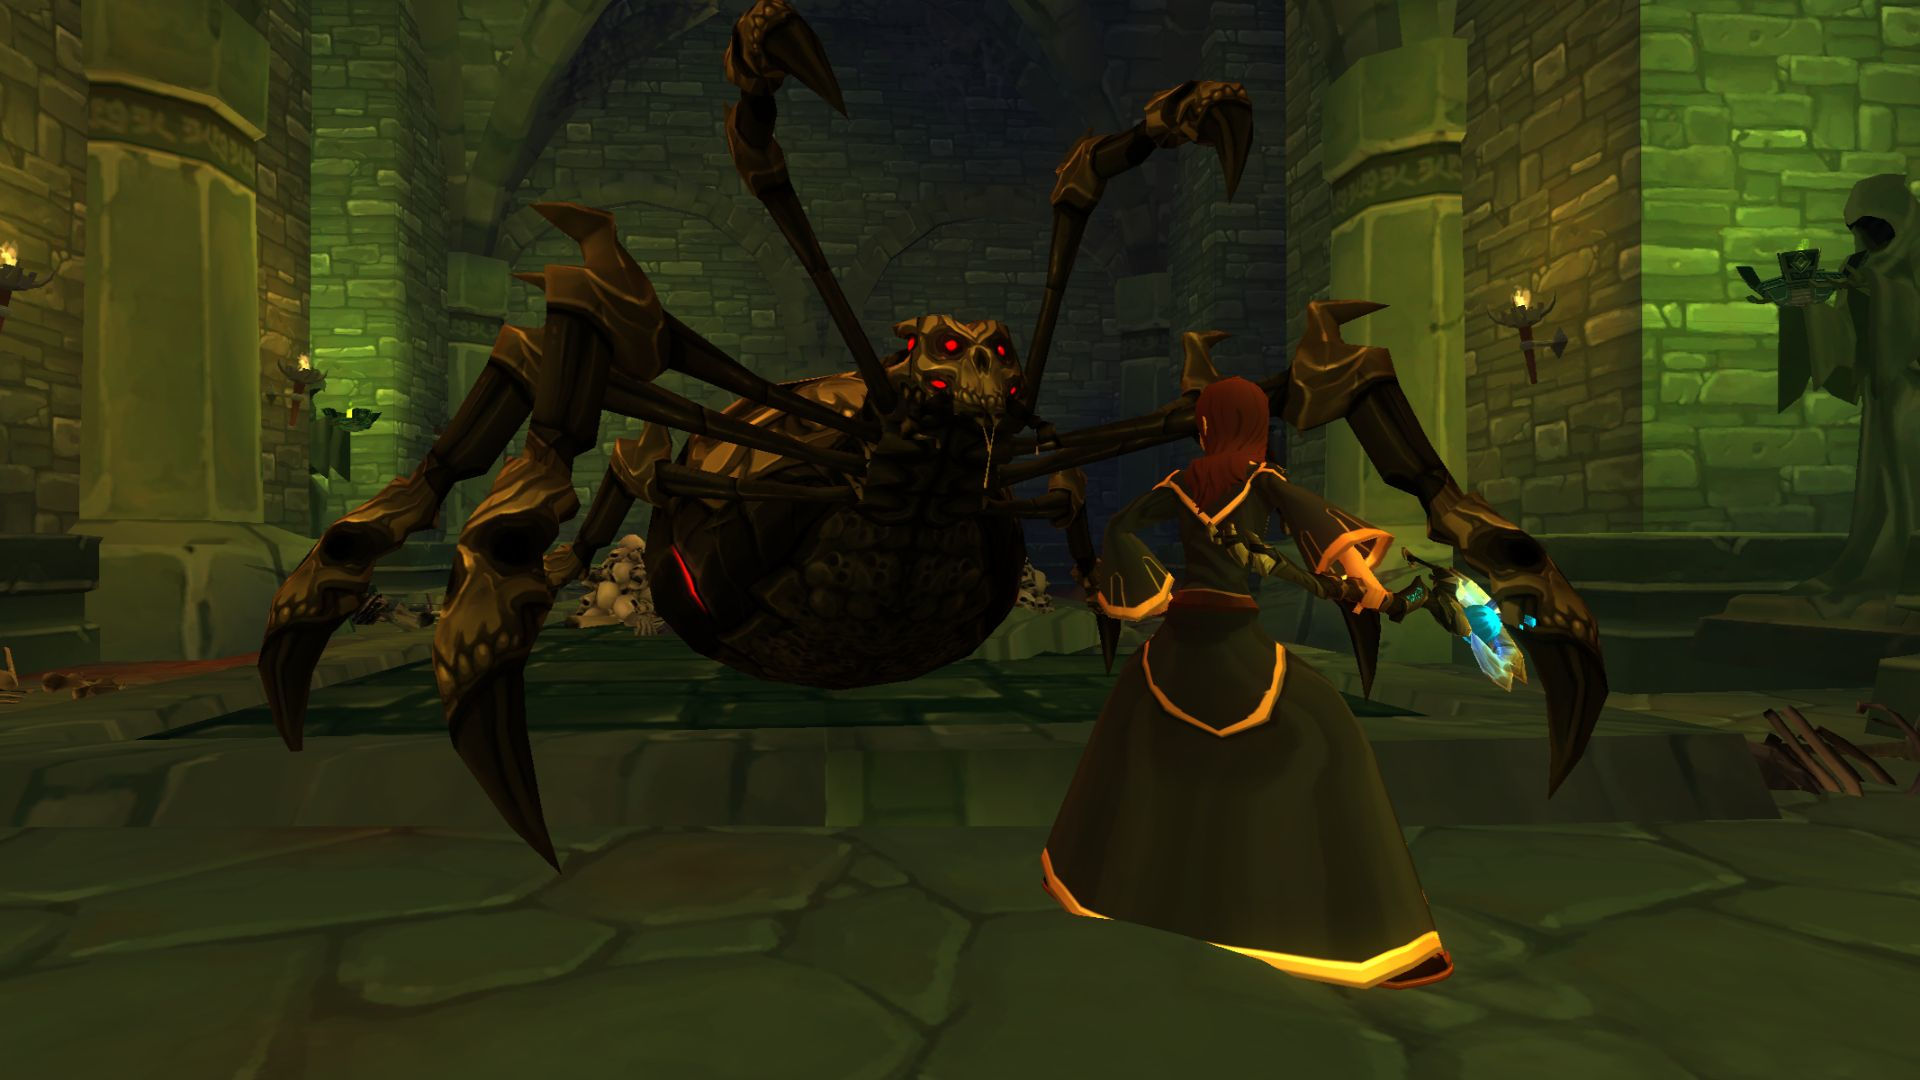 Bästa mobila MMORPGS: Adventure Quest 3D. Bilden visar en mage som håller på att kämpa mot en jätte spindel med ett skallliknande huvud